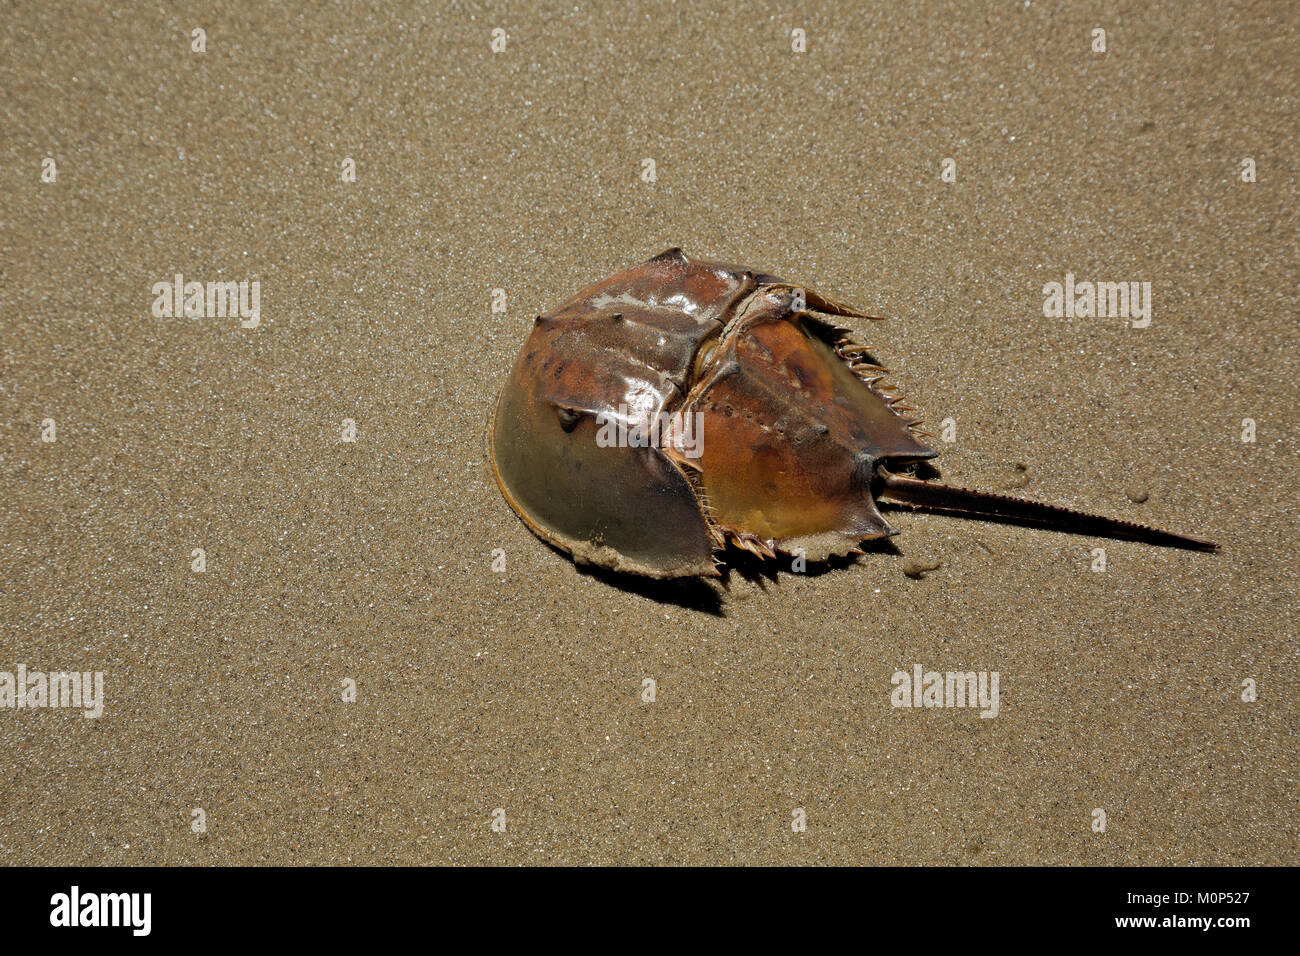 NC-01411-00... NORTH CAROLINA - Die harten Panzers einer Horseshoe crab entlang der Sandstrände der Outer Banks gefunden. Stockfoto